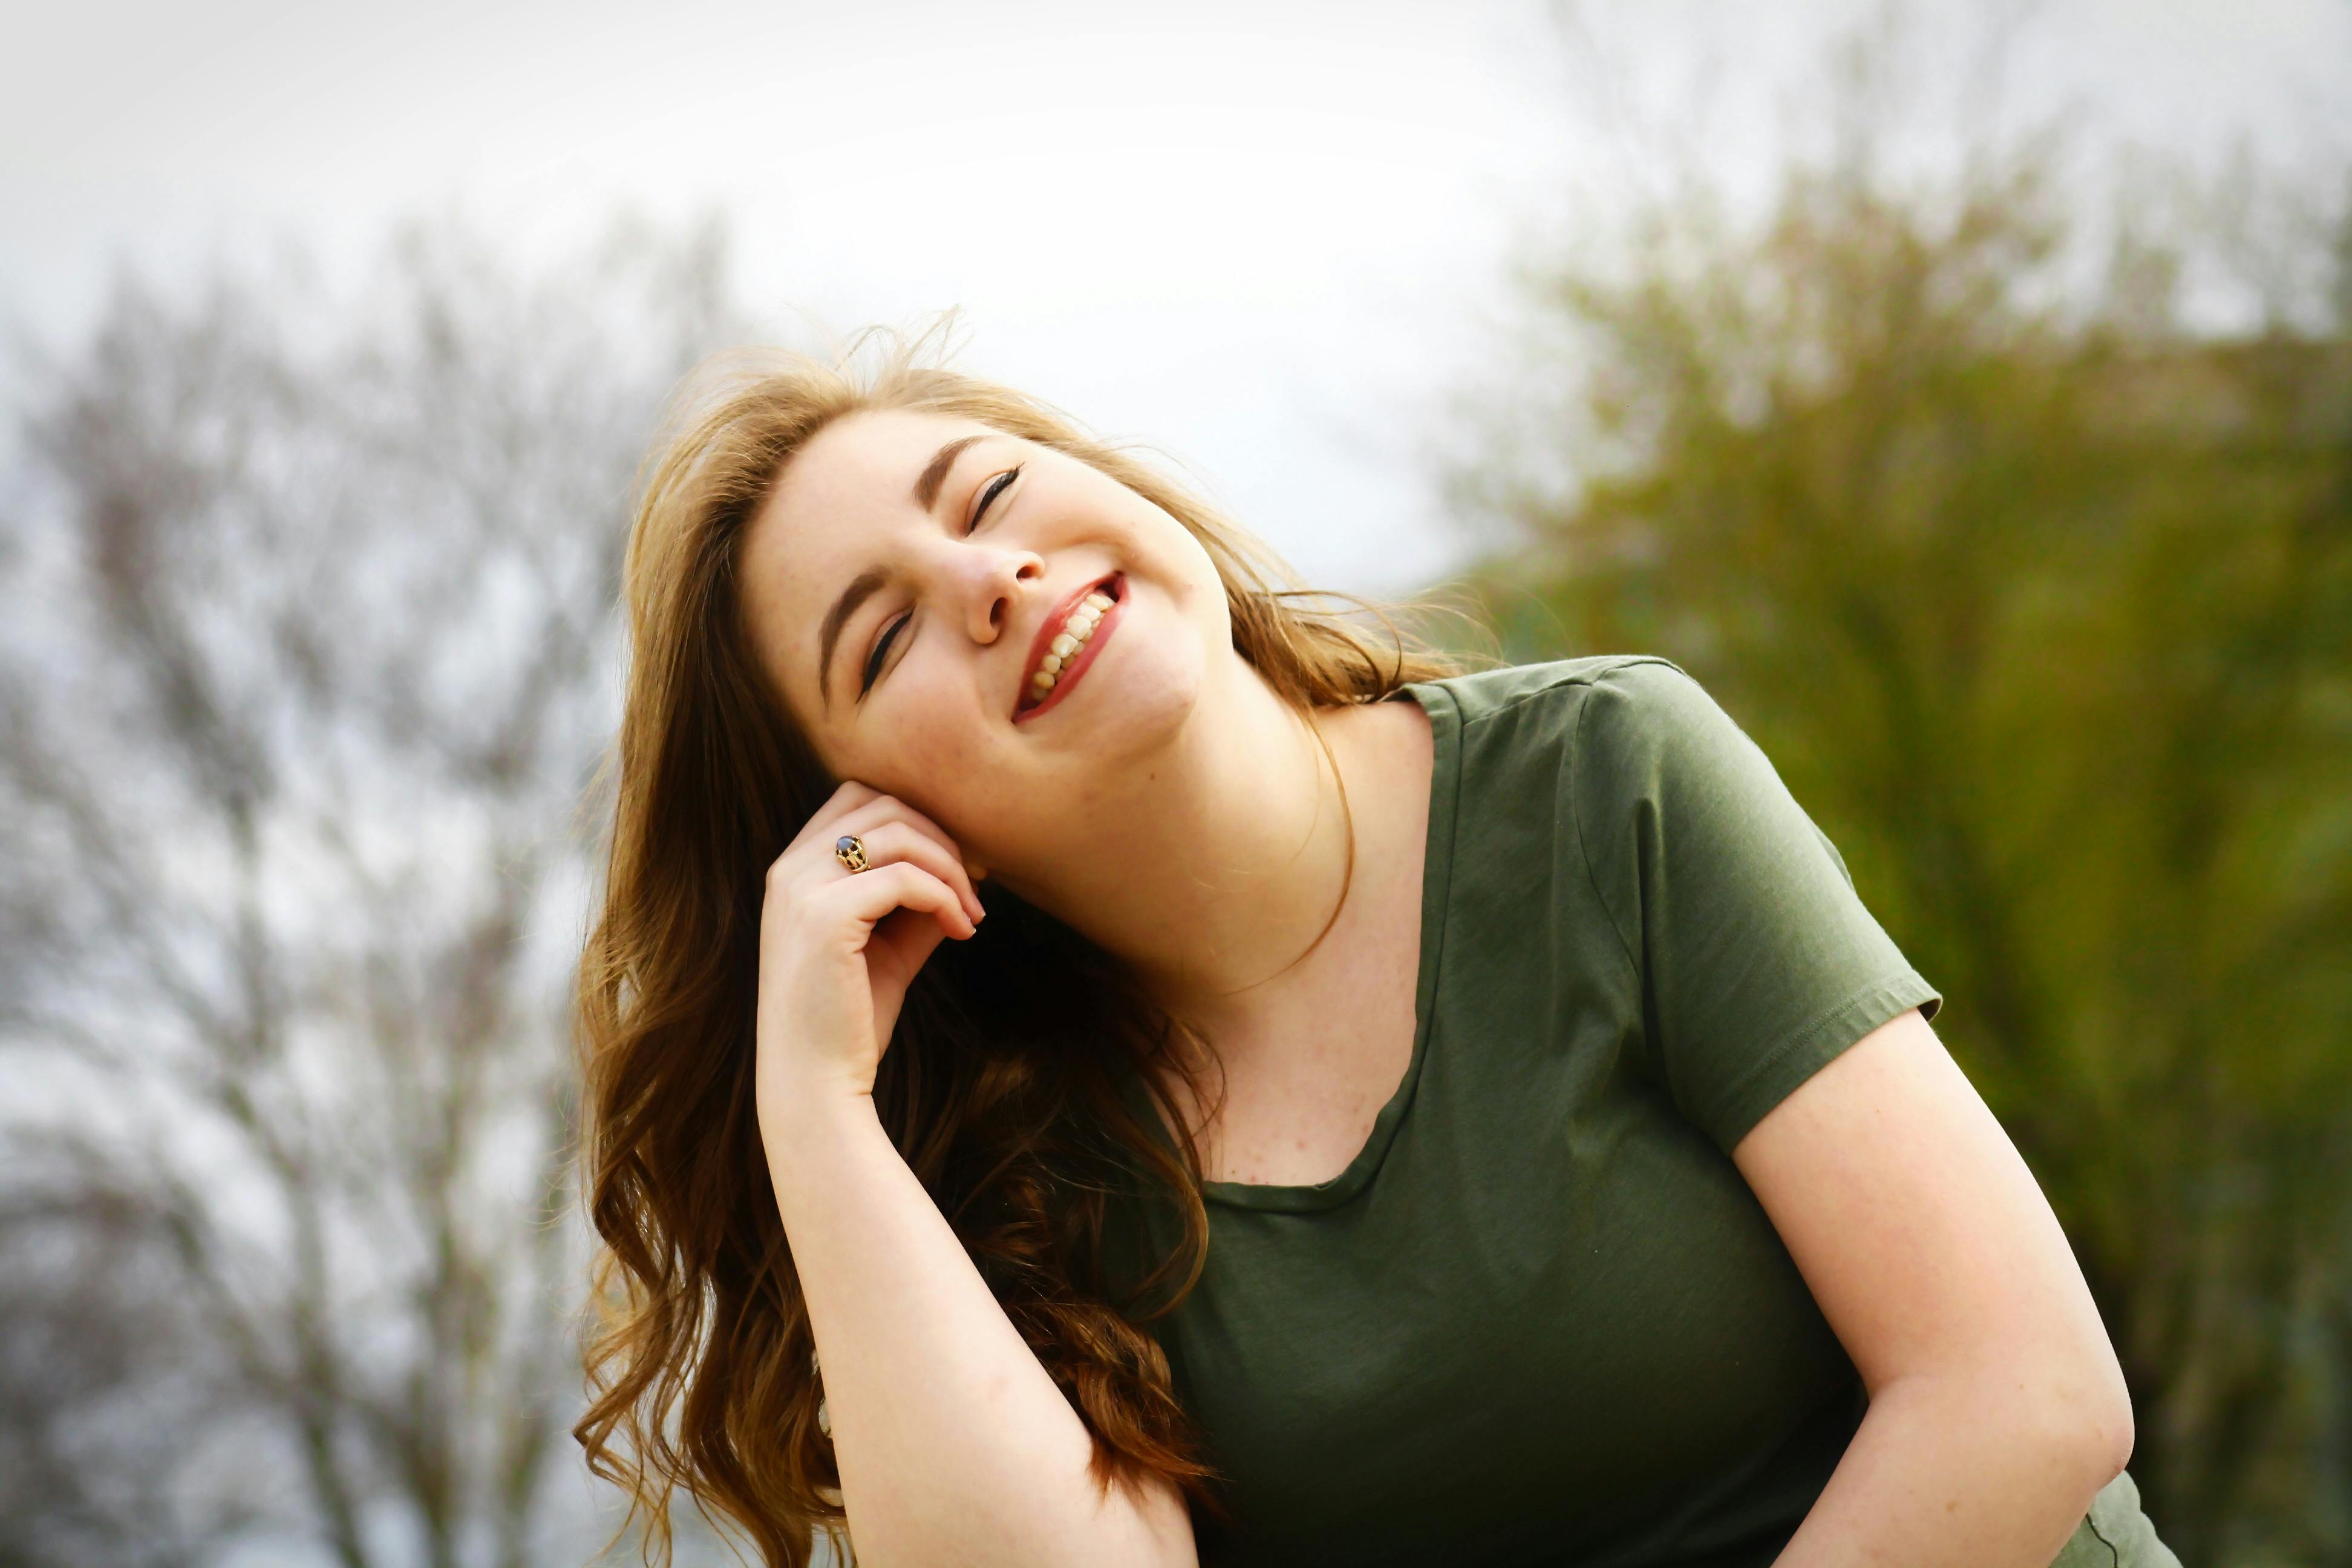 Une femme heureuse qui sourit en profitant du soleil | Source : Pexels